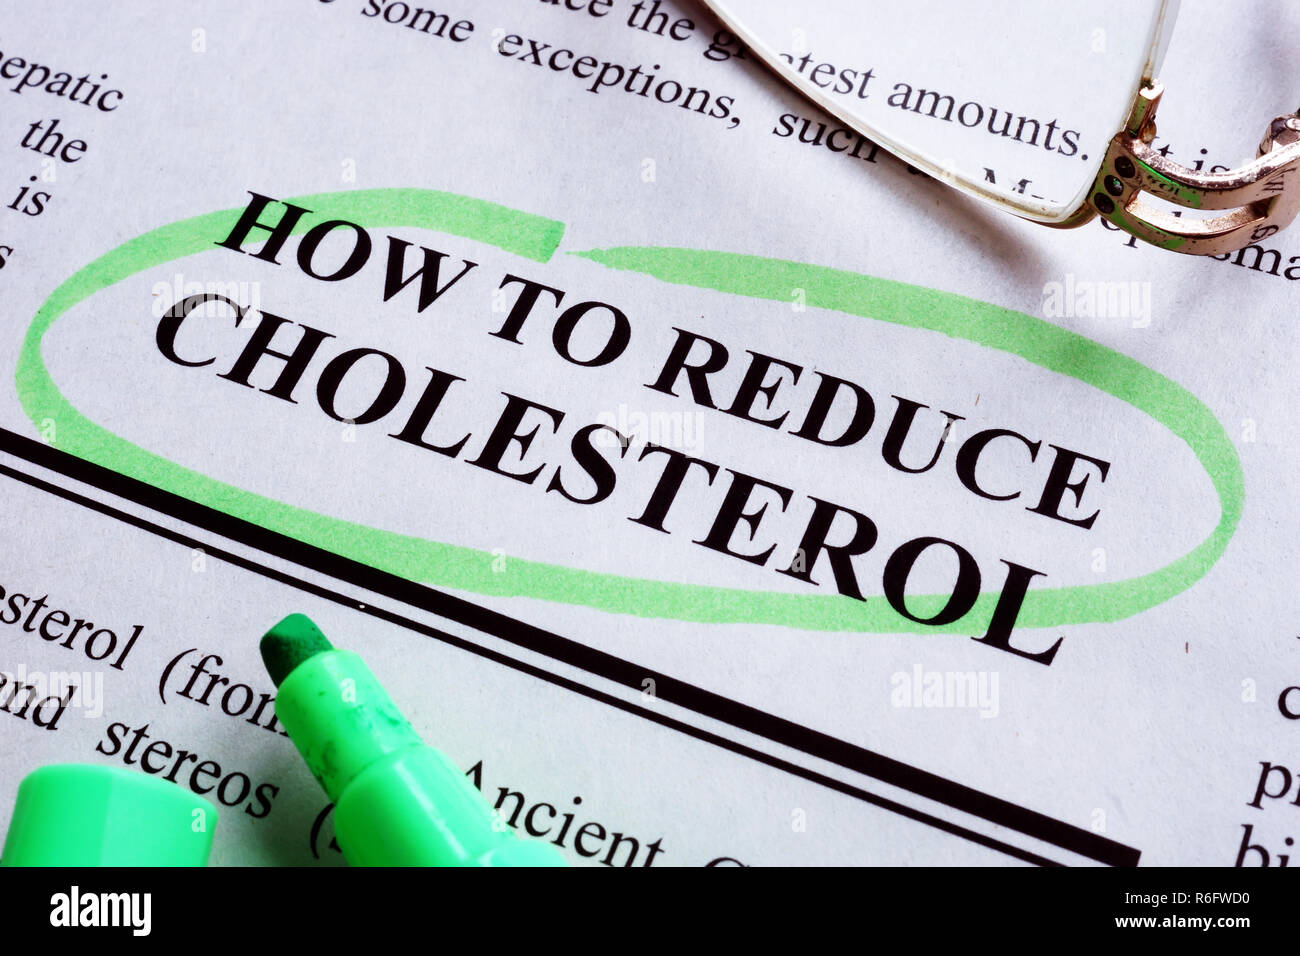 Iscrizione Come ridurre il colesterolo è sottolineata da un marcatore. Foto Stock